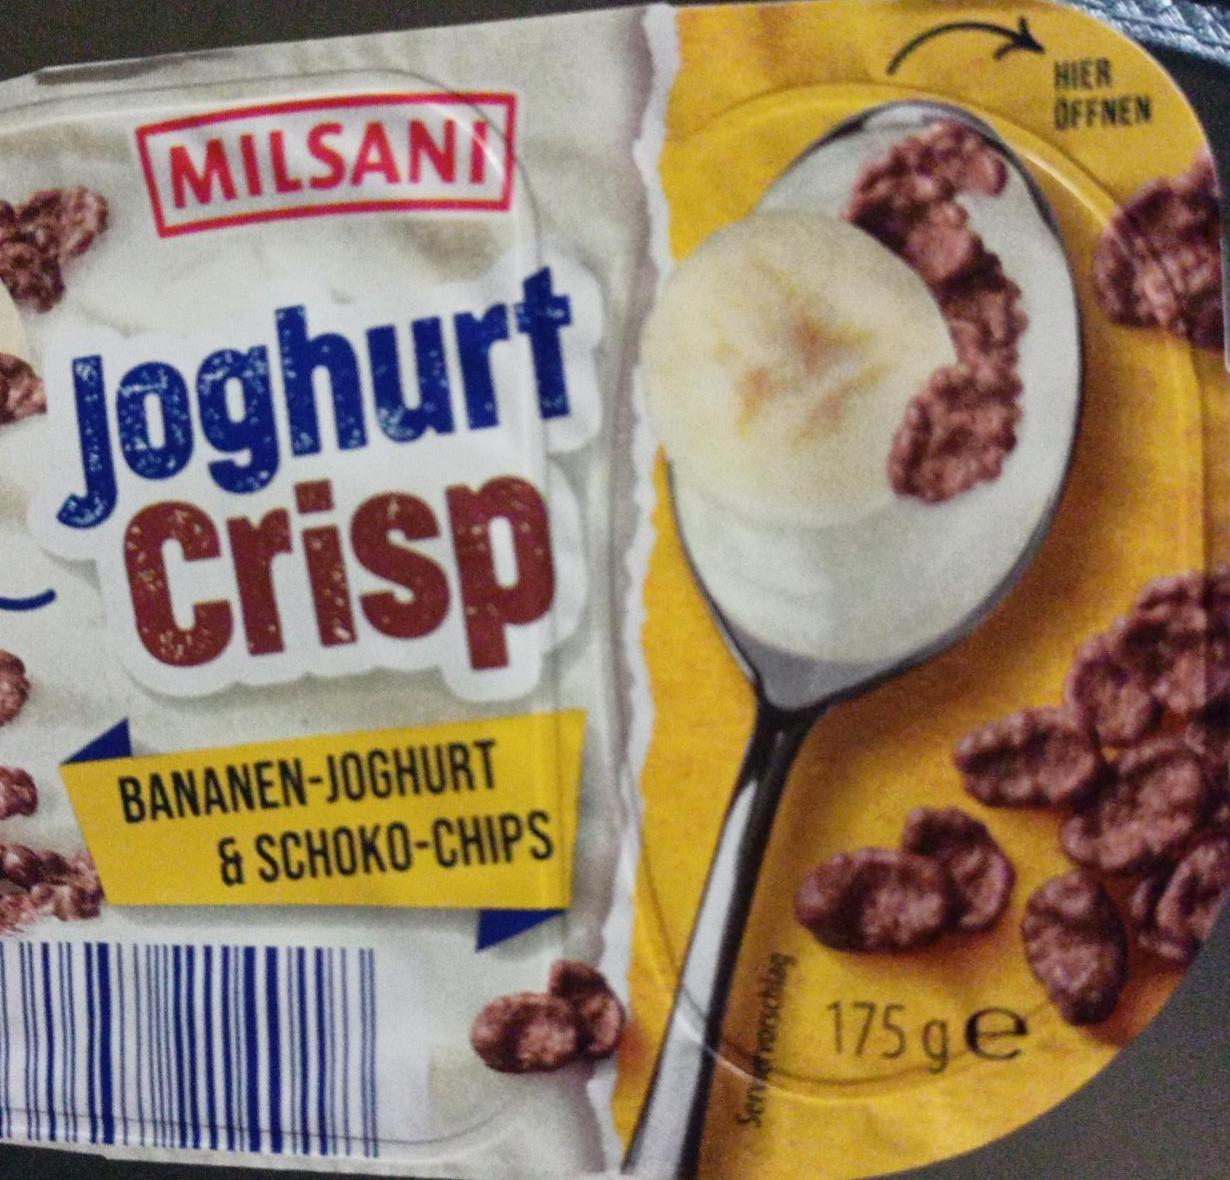 Fotografie - Joghurt crisp Bananen-Joghurt & Schoko-chips Milsani